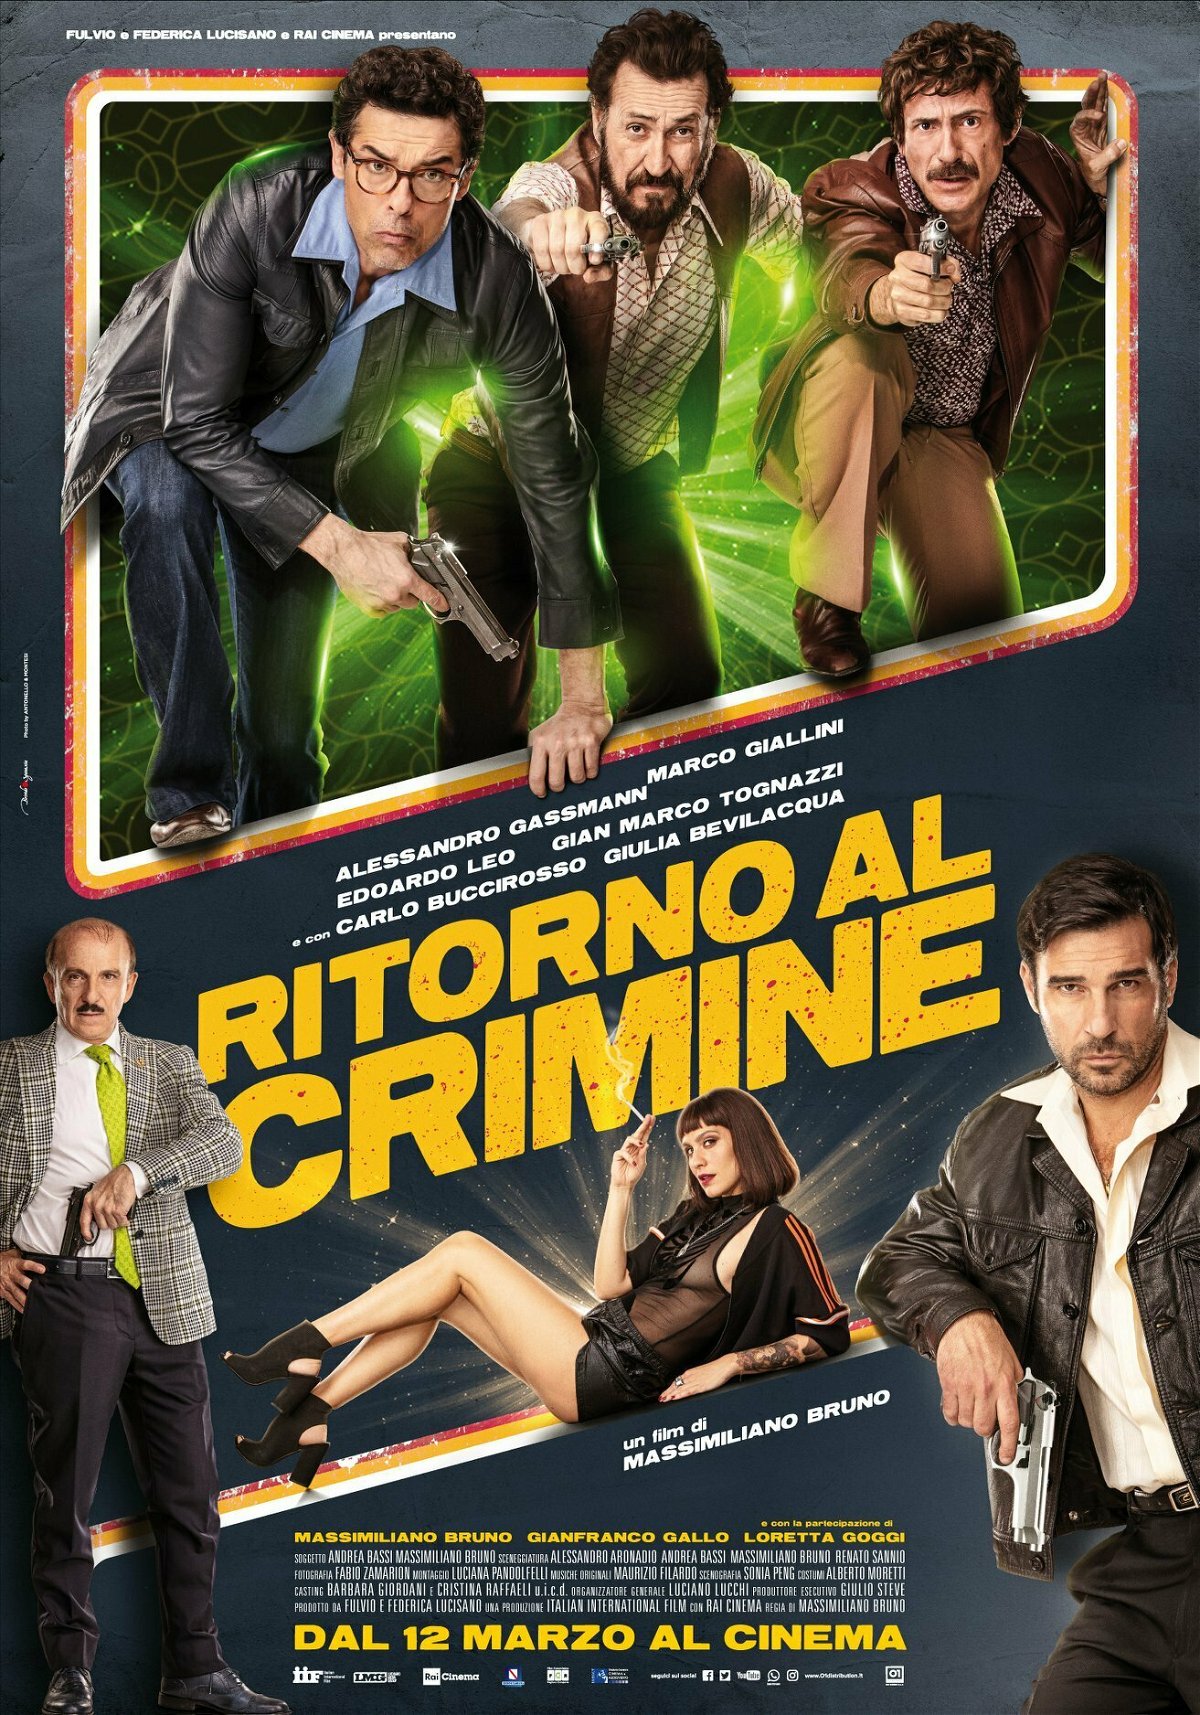 Il poster di Ritorno al crimine